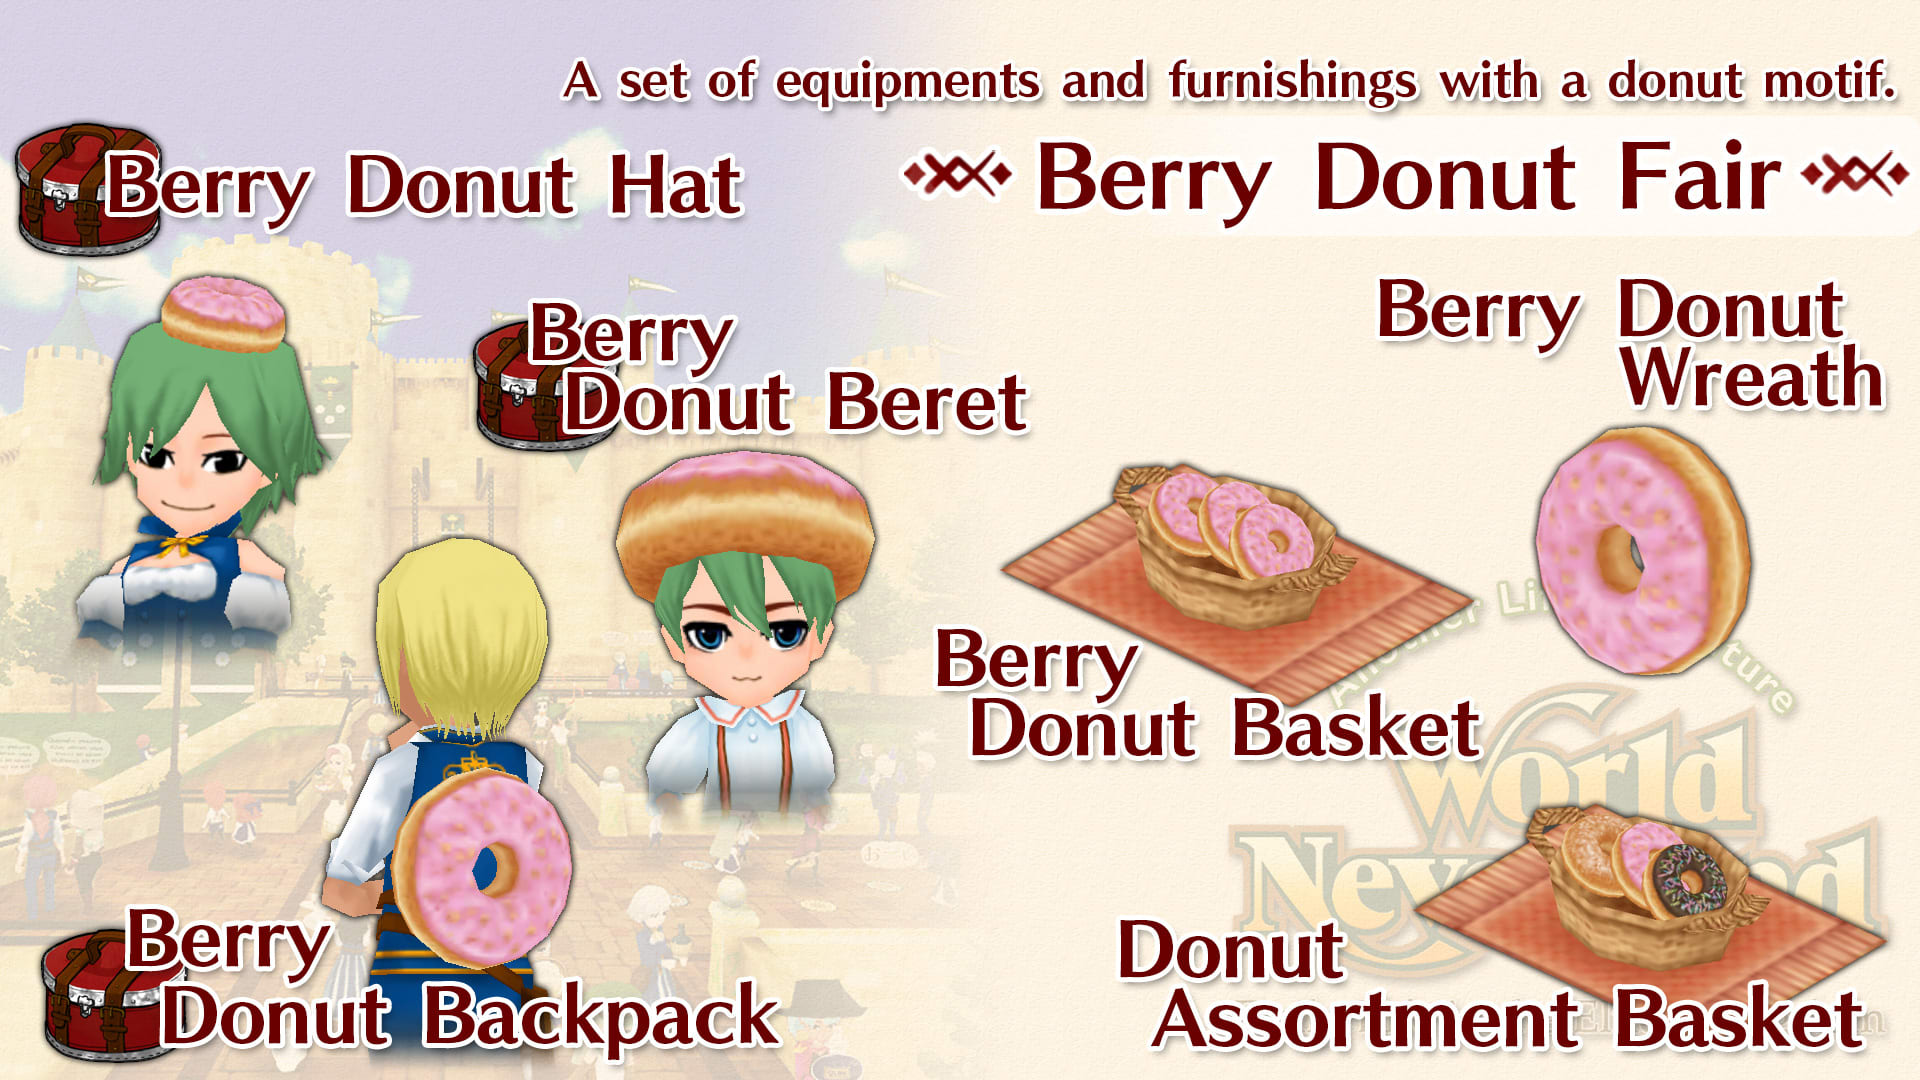 Berry Donut Fair